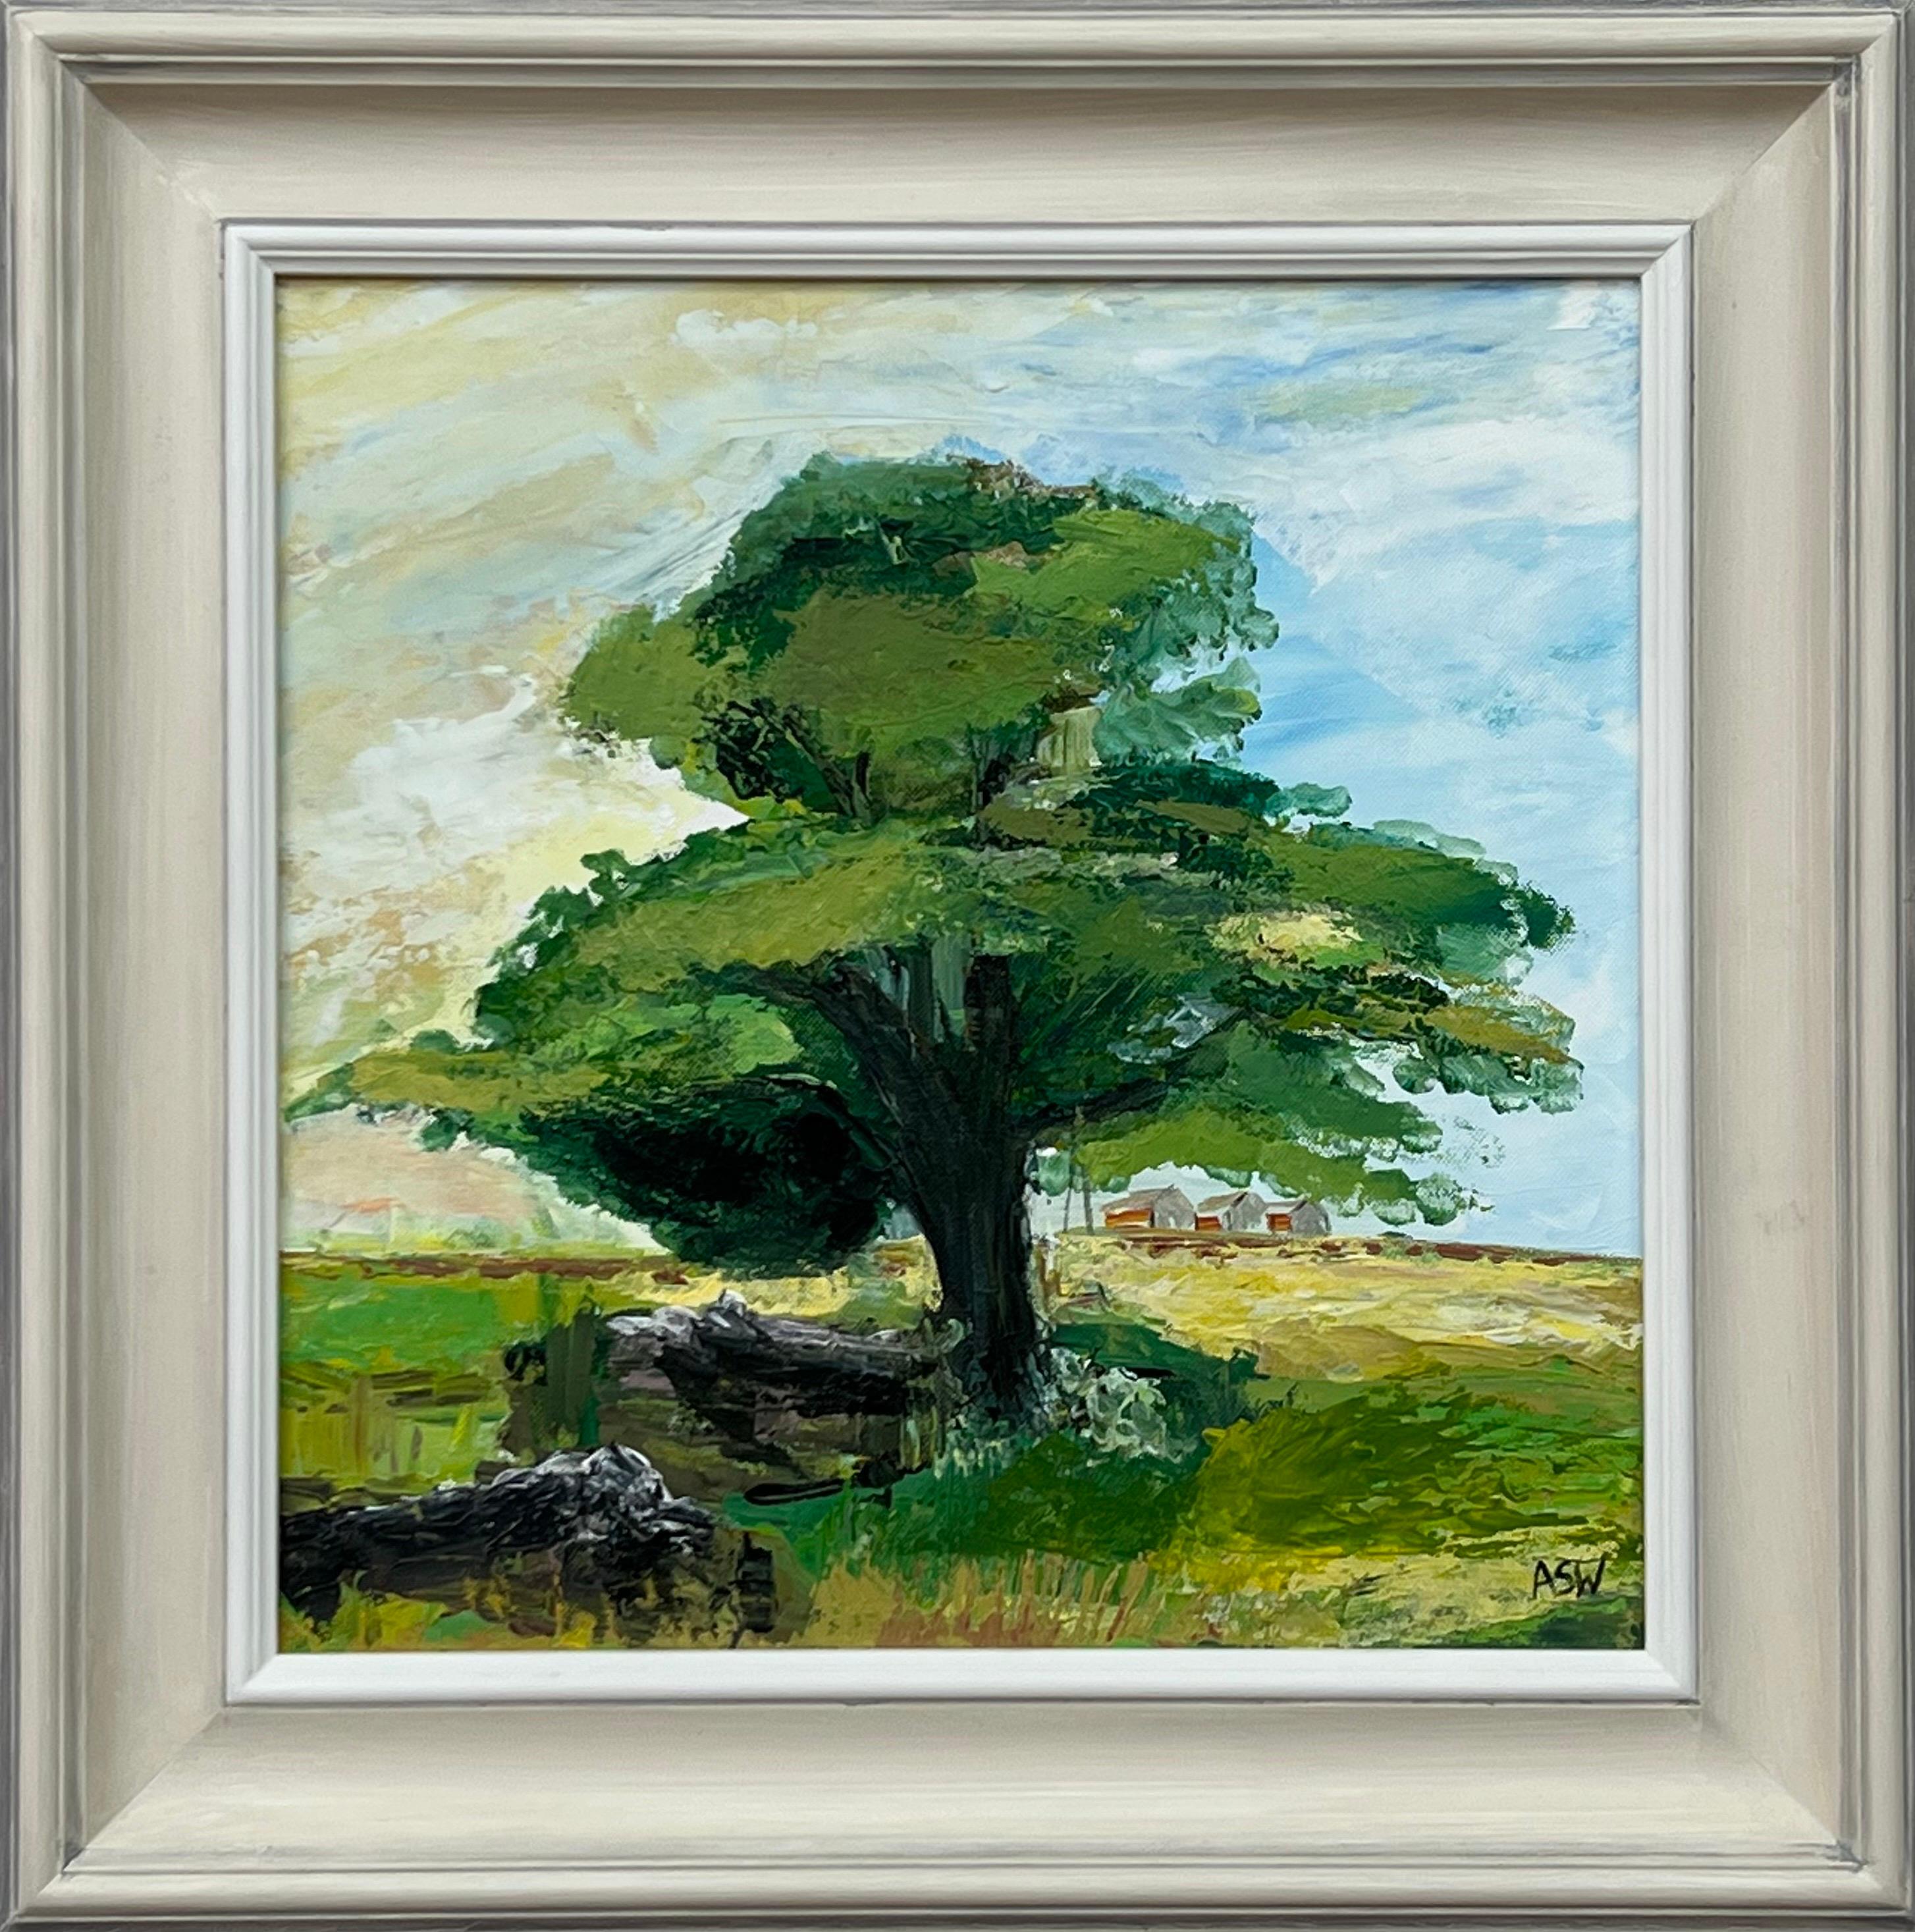 Abstract Painting Angela Wakefield - Peinture de paysage expressive en forme d'arbre de chêne par un artiste britannique contemporain